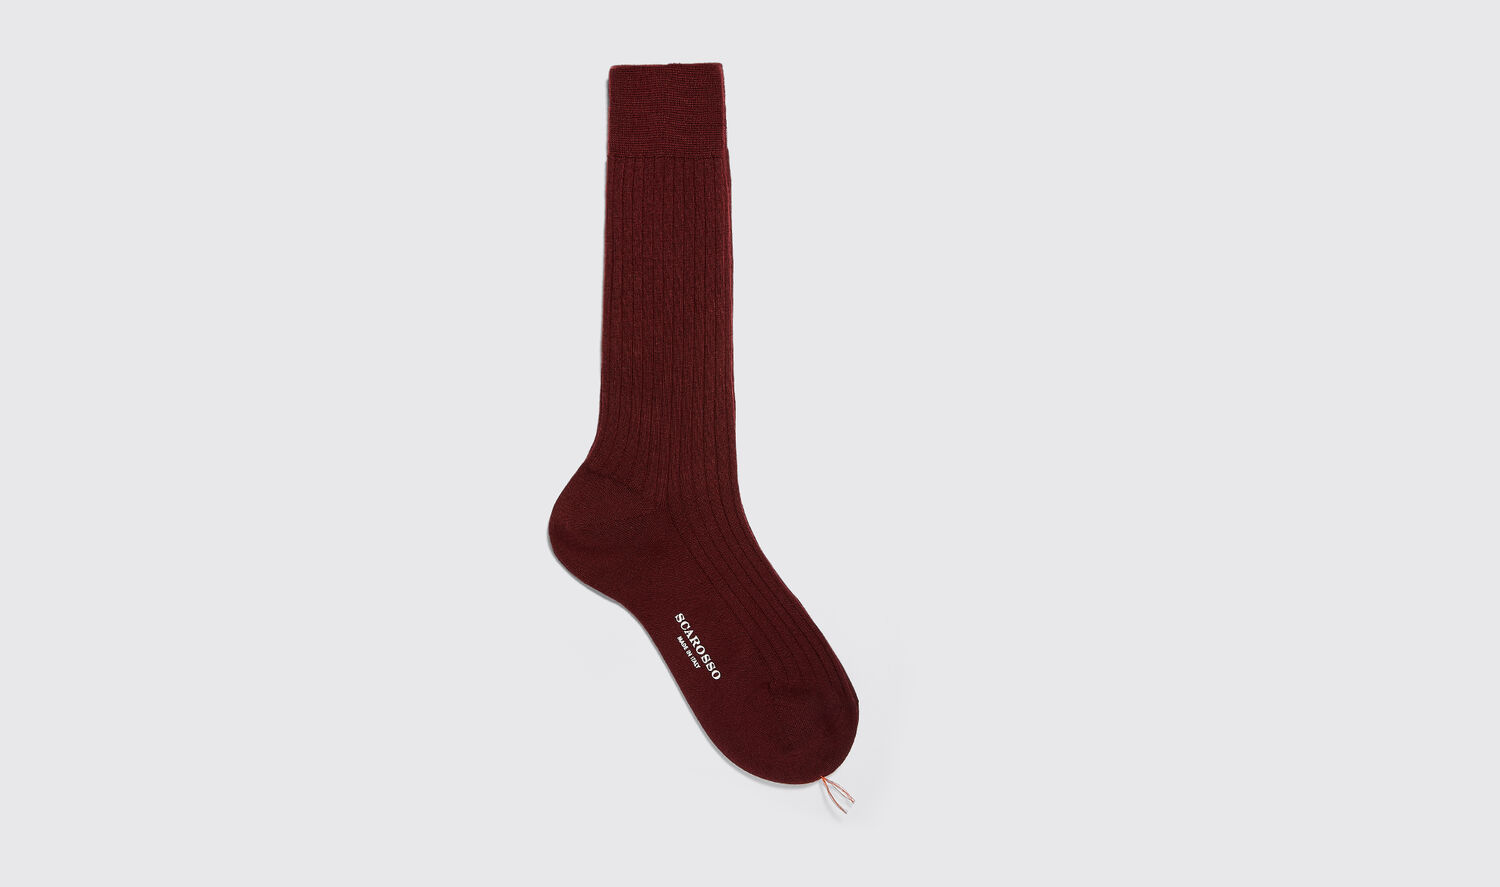 Scarosso Socks Burgundy Wool Calf Socks Merino Wool In Burgundy - Wool